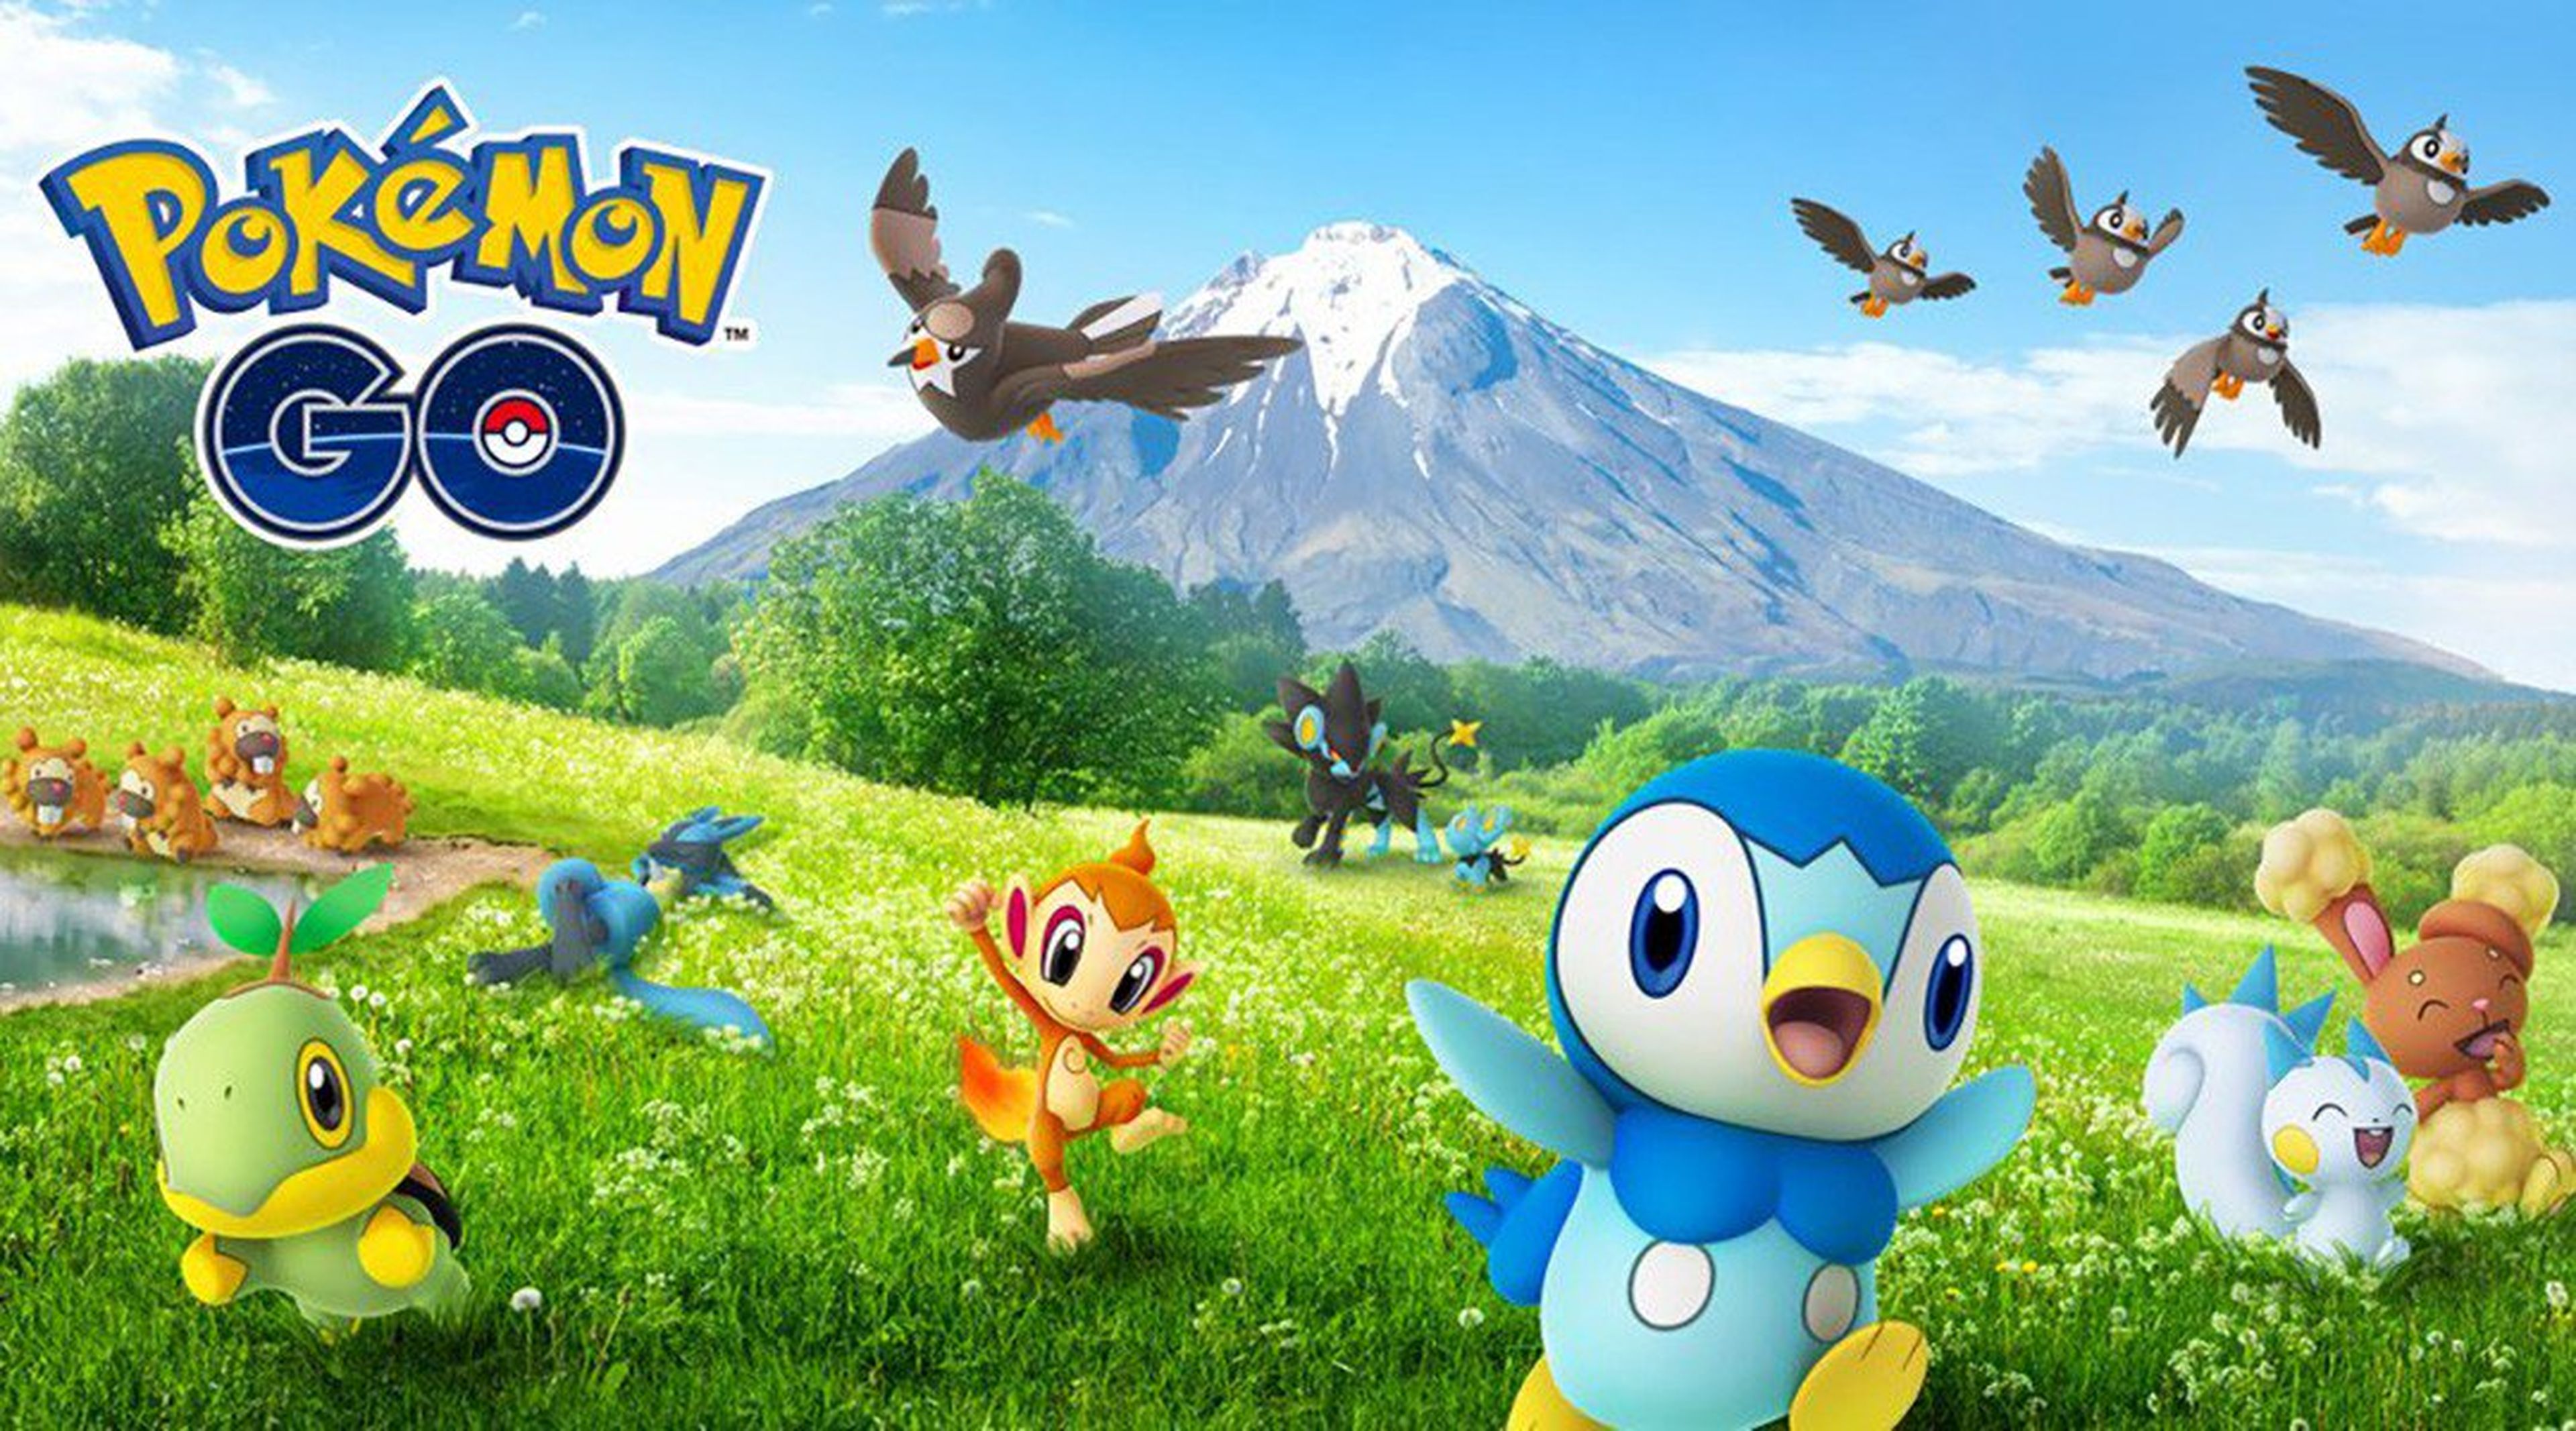 Cuarta generación en Pokémon GO